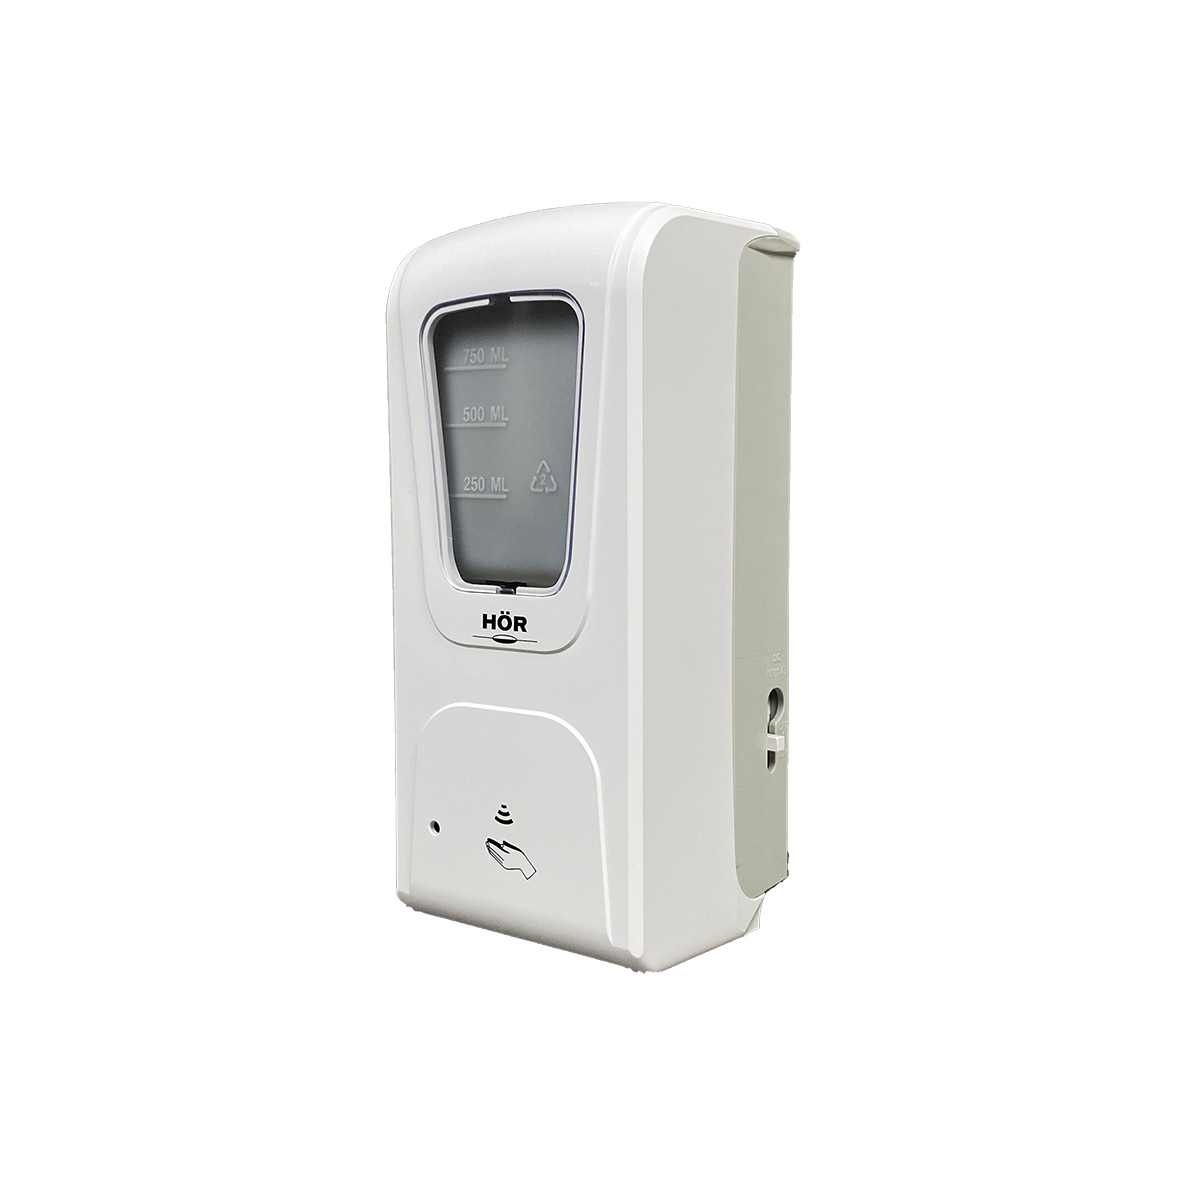 Дозатор сенсорный автоматический HOR-DE-006B для жидкого мыла, антисептика, дезсредств (капля), 1 л, фото 1